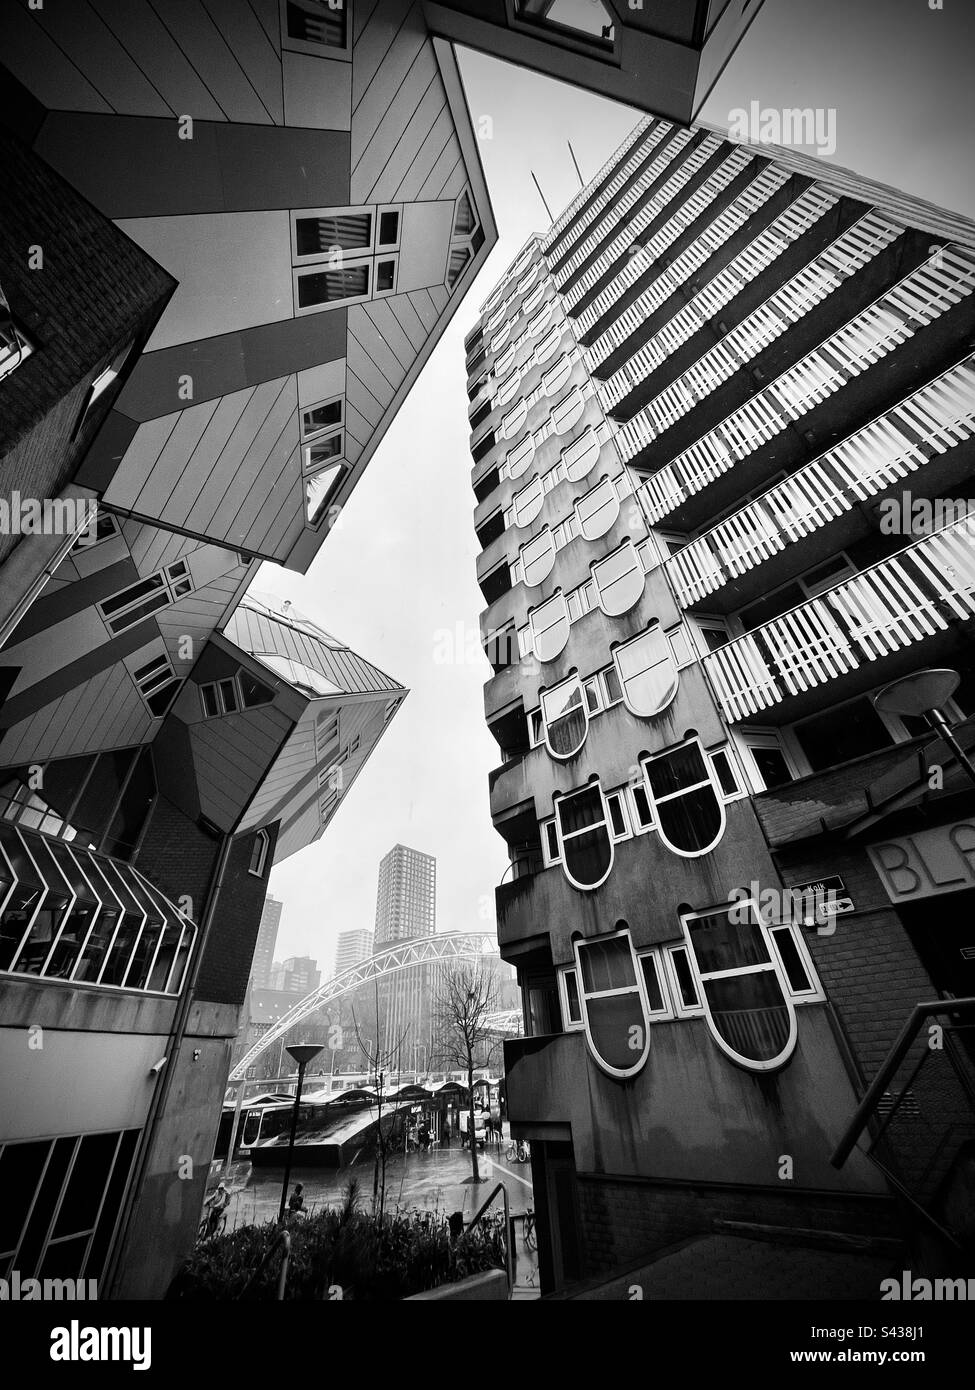 Kubus, Cube House, Rotterdam, Nederlands, Países Bajos, Arquitectura, B&N, Blanco y negro, Blaak, edificios, Puente, río, puerto viejo, abstracto Foto de stock